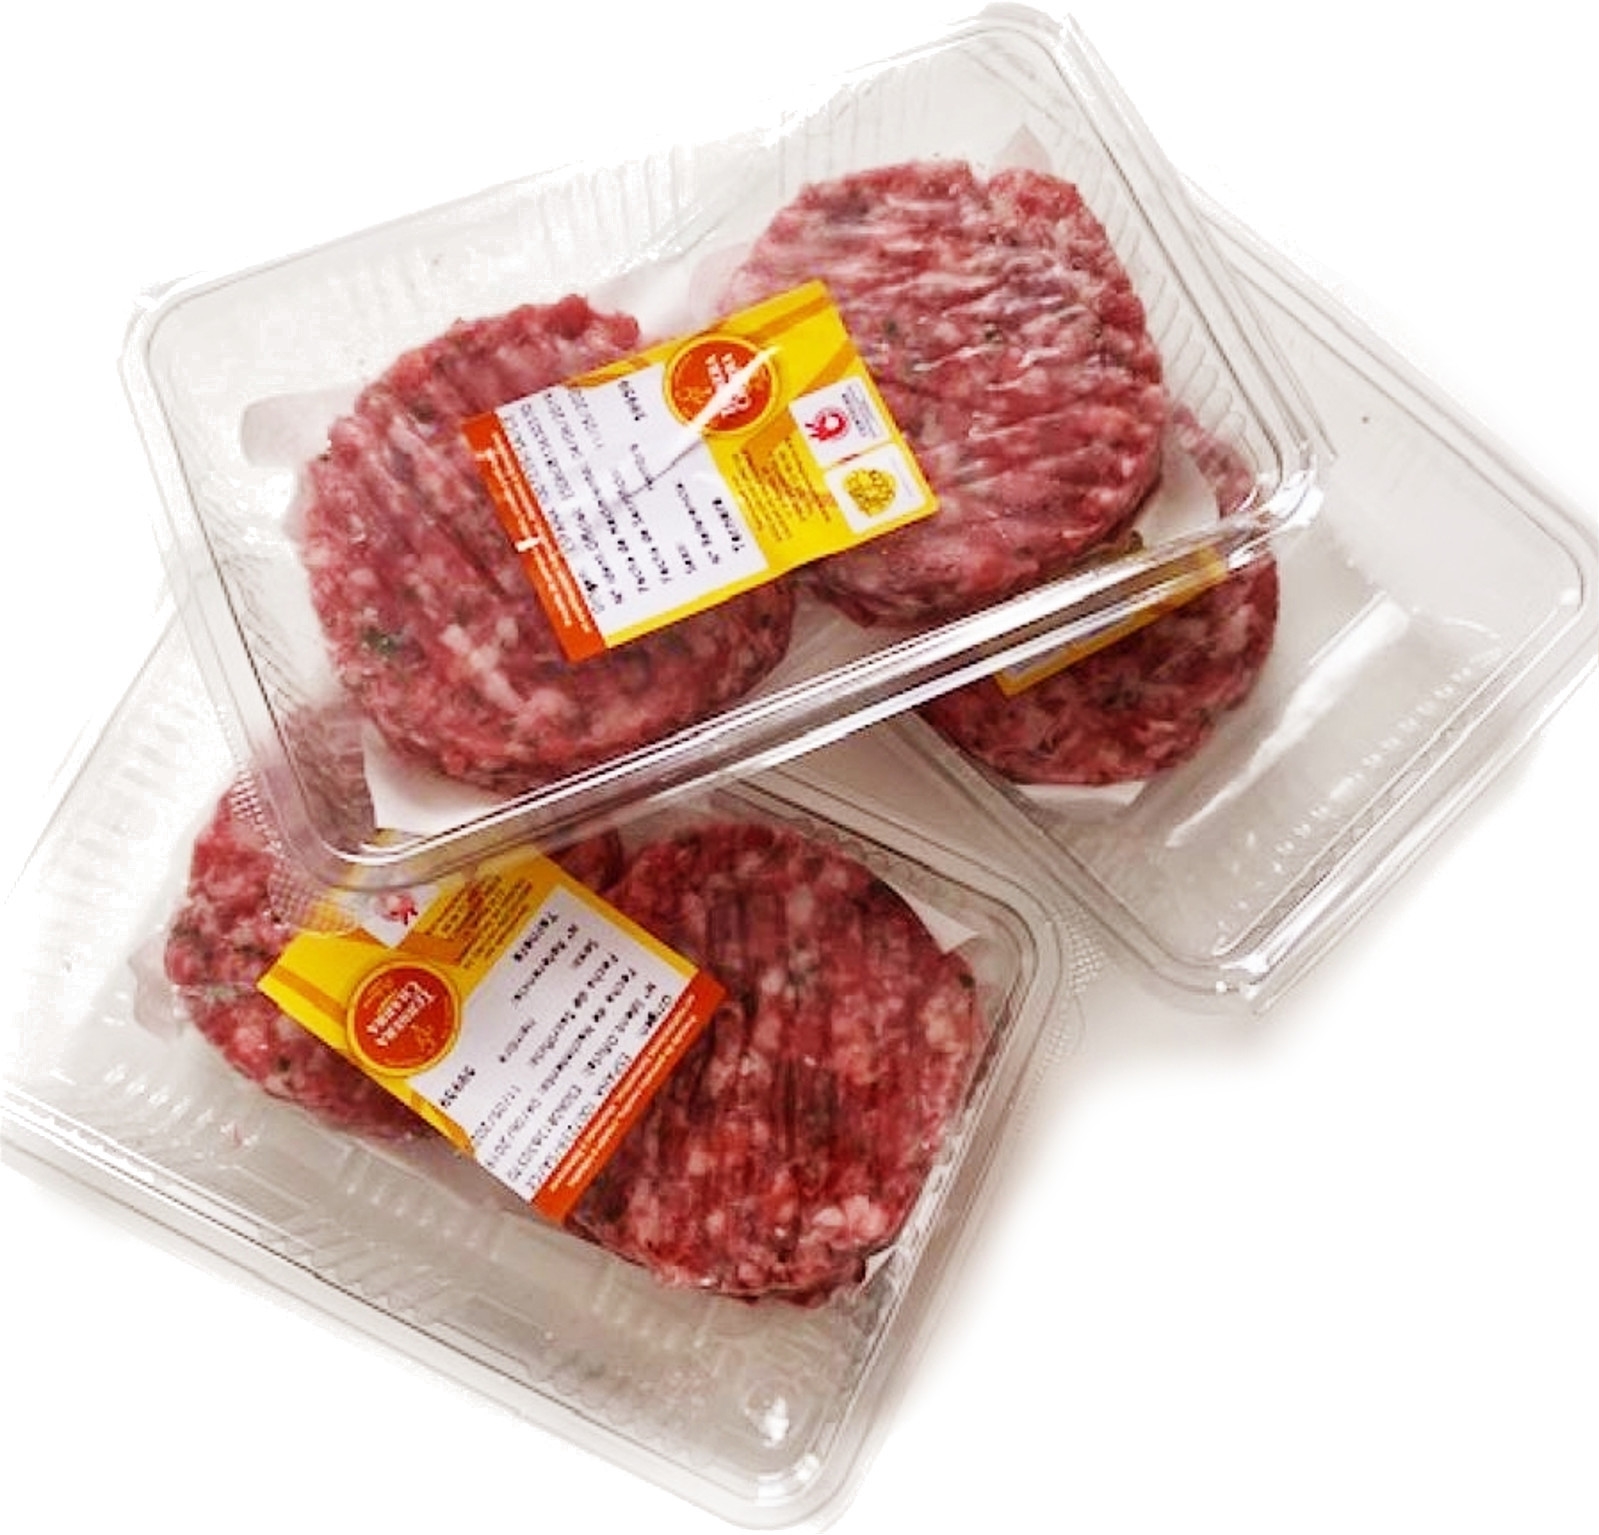 Comprar Carne Picada de Ternera de Ávila - Envío GRATIS